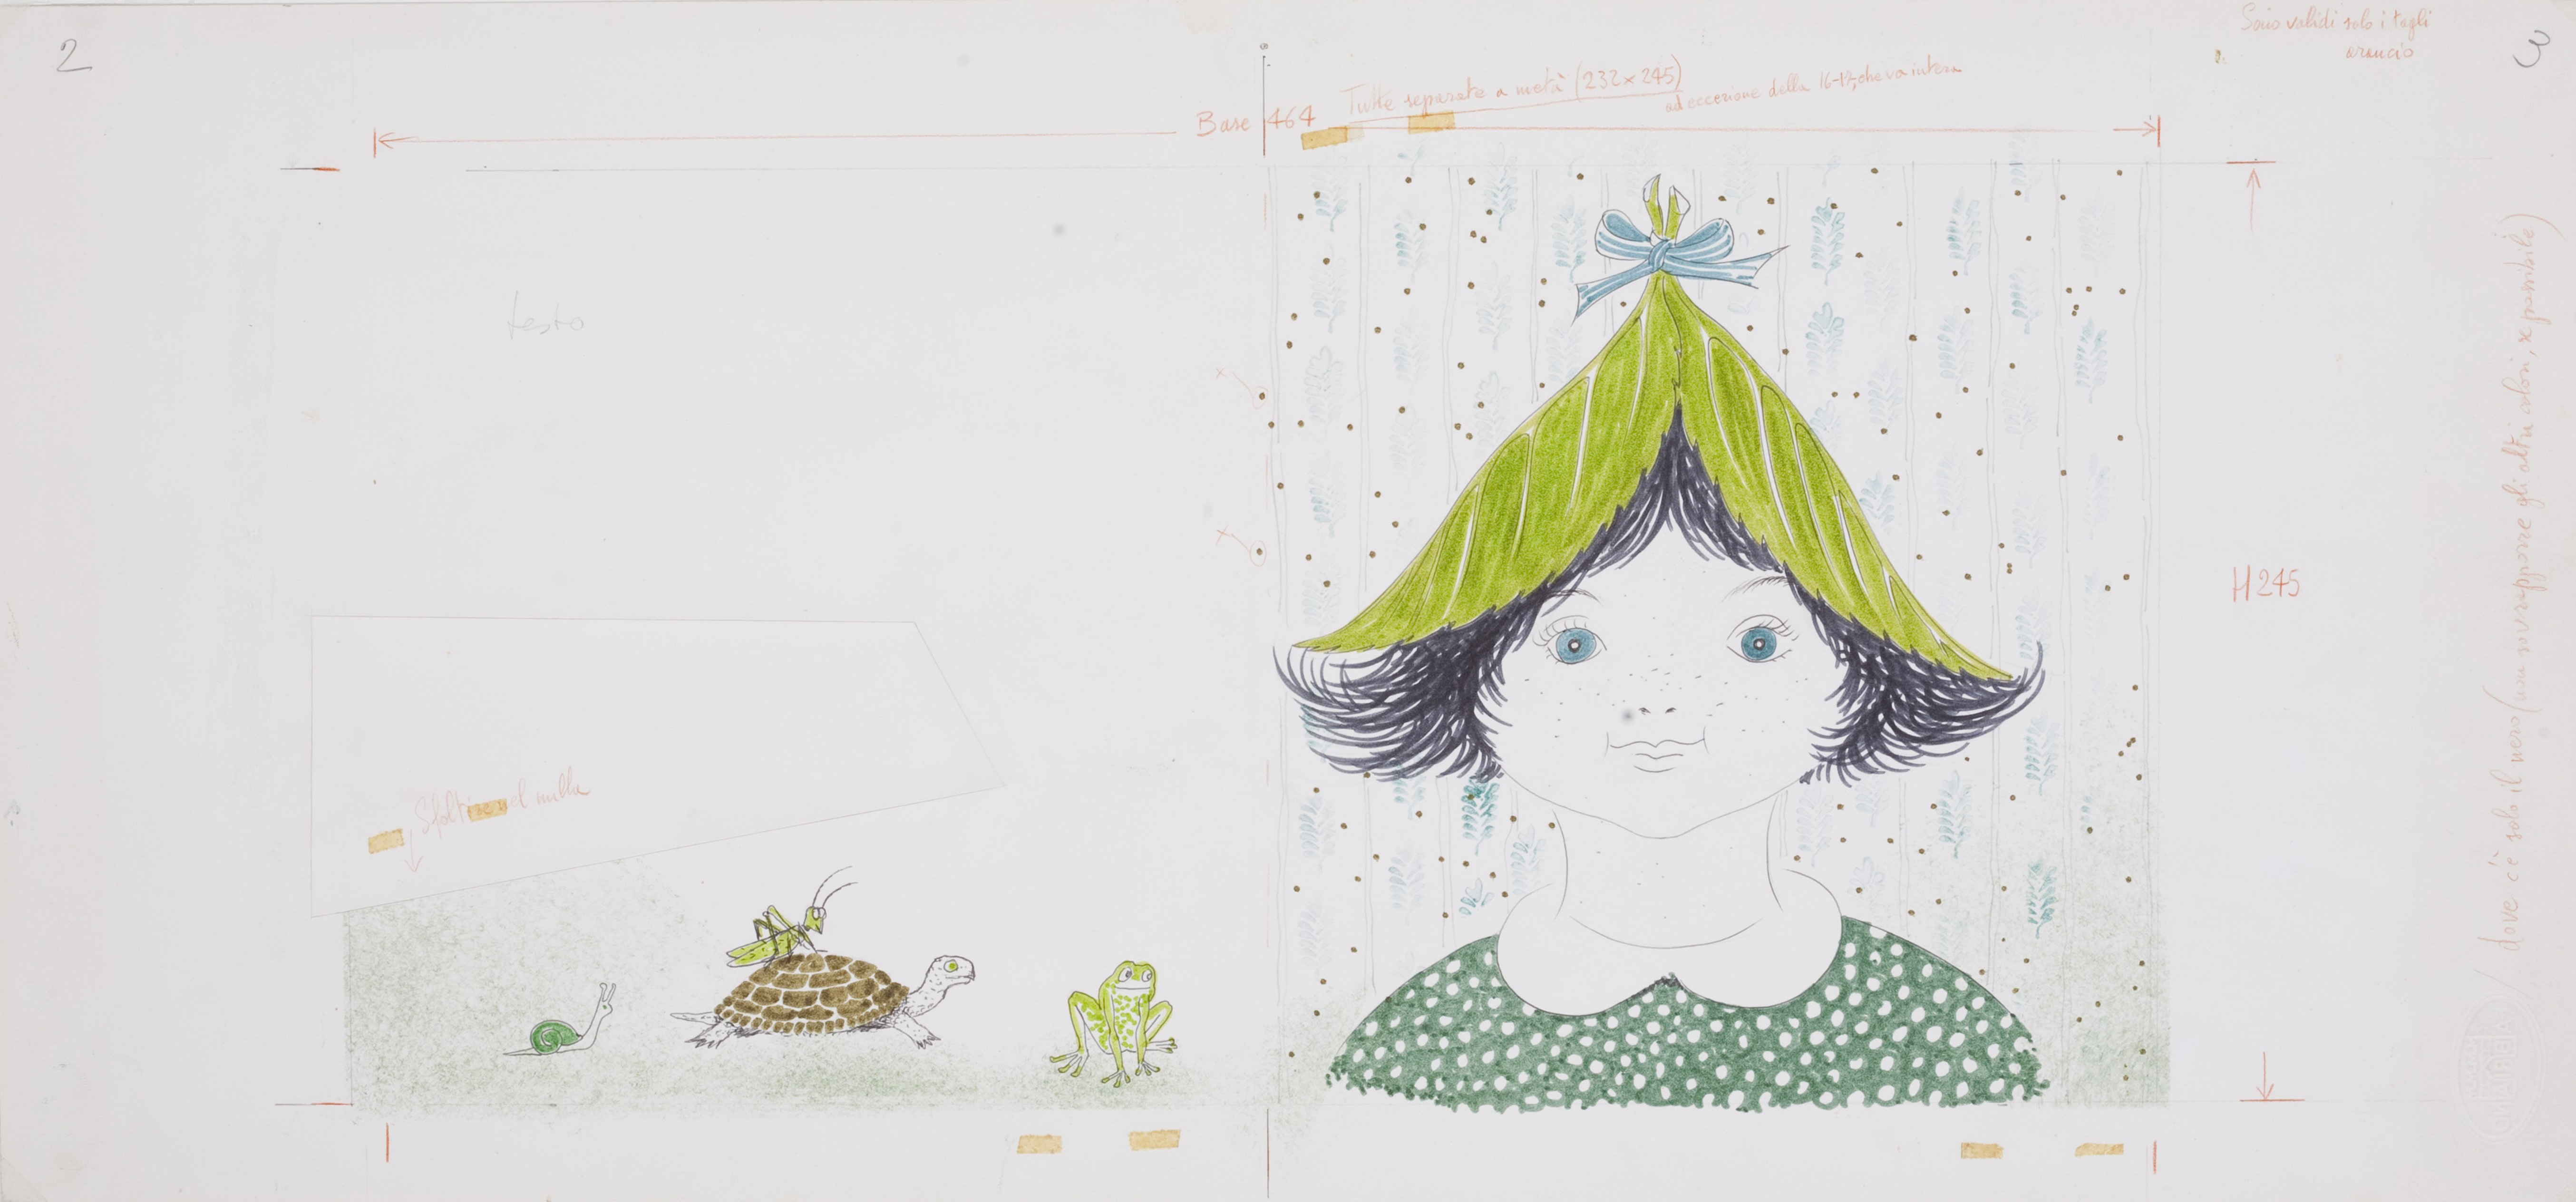 ブルーノ・ムナーリ　《『みどりずきんちゃん』のためのイラストレーションとレイアウト》　制作年不詳(1972年)　パルマ大学CSAC